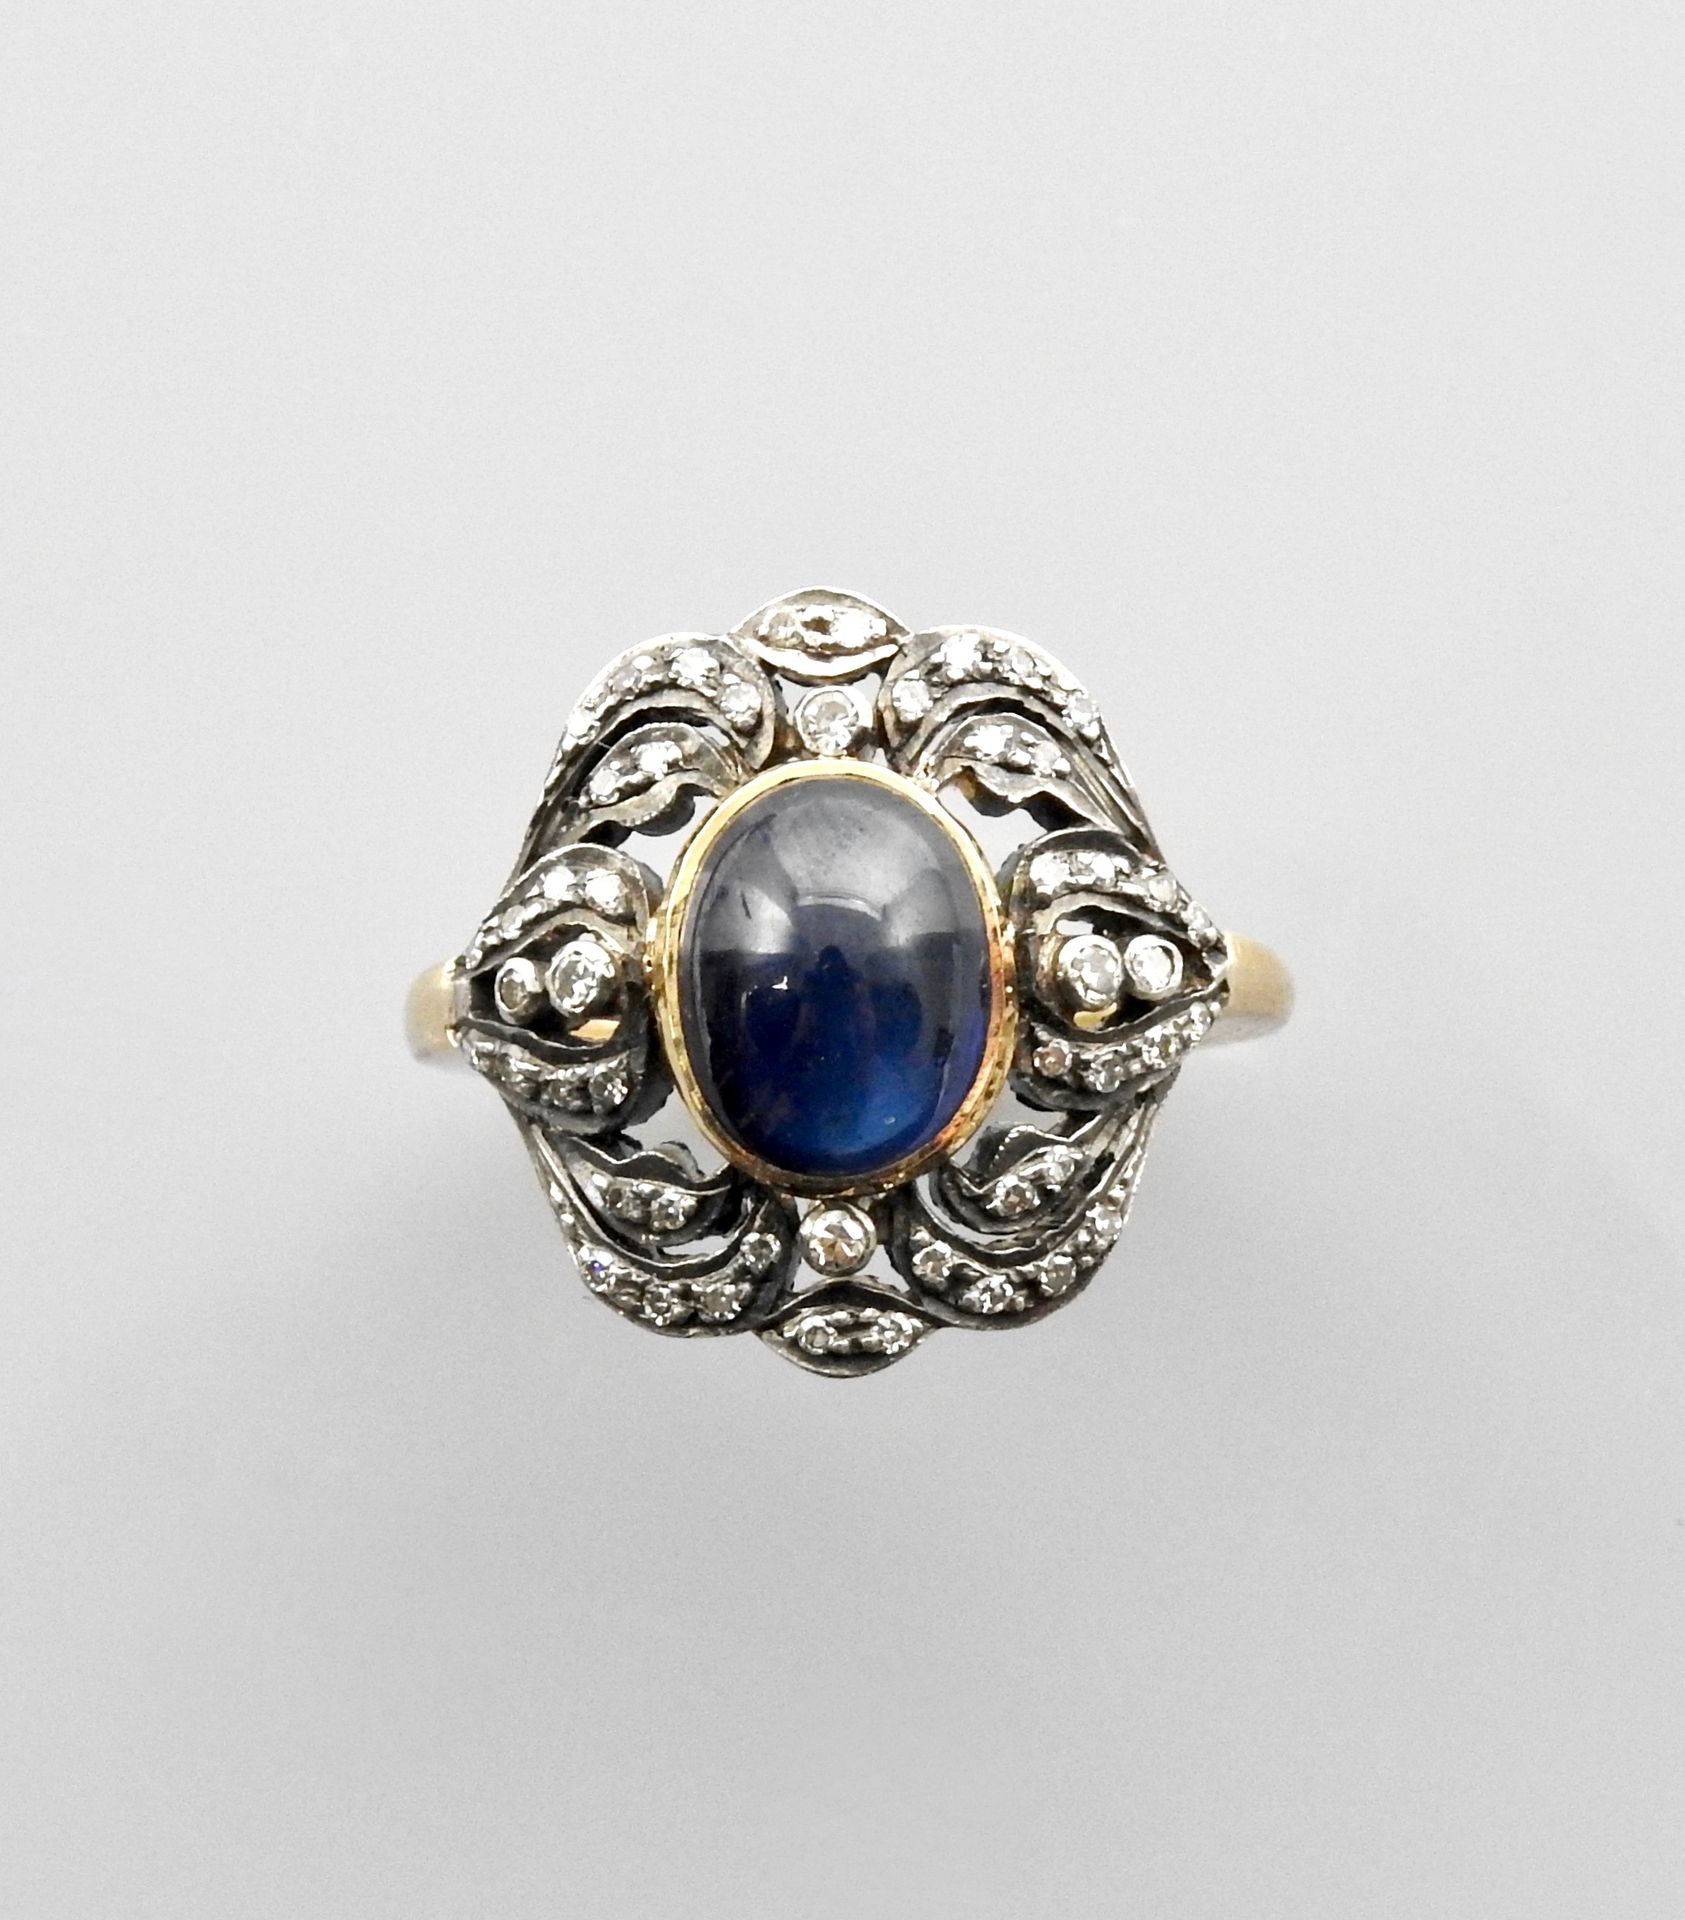 Null 黄金750毫米和银925毫米戒指，中间是一颗凸圆形蓝宝石，镶嵌在镶有钻石的楣上，重约4克拉，2 x 2厘米，尺寸：57，重量：4克。